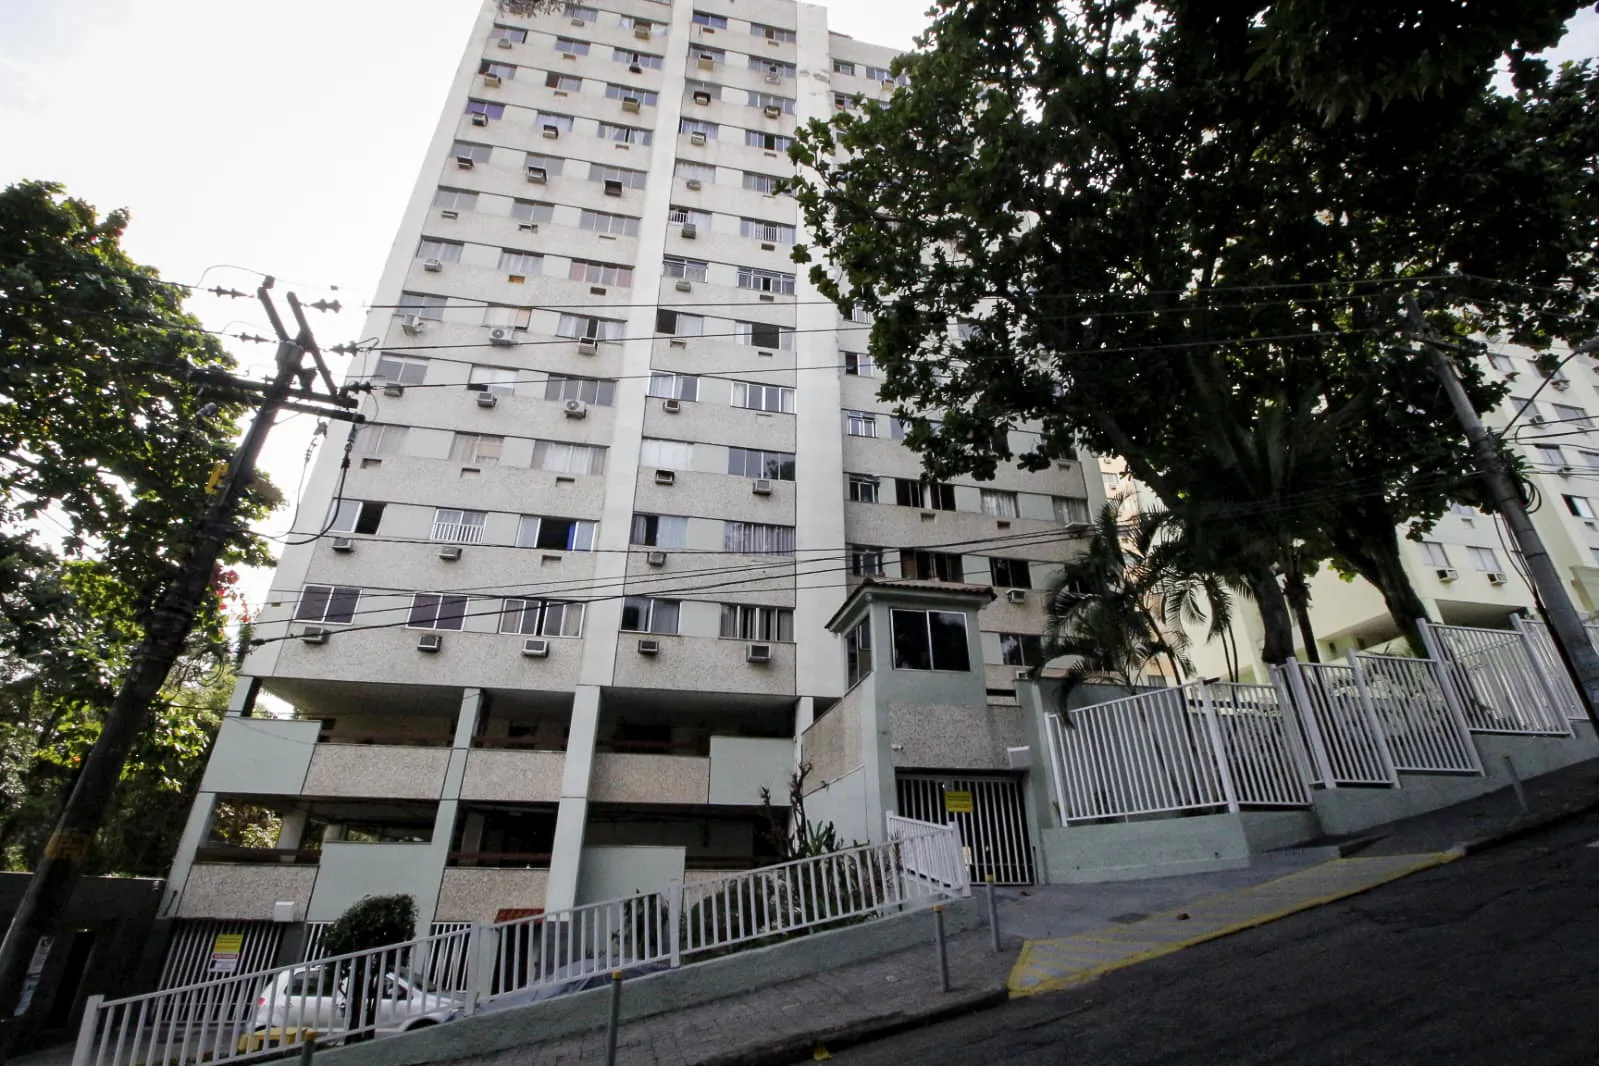 Condomínio Parque do Lazer, onde ocorreu o crime, fica na Taquara, na Zona Oeste do Rio